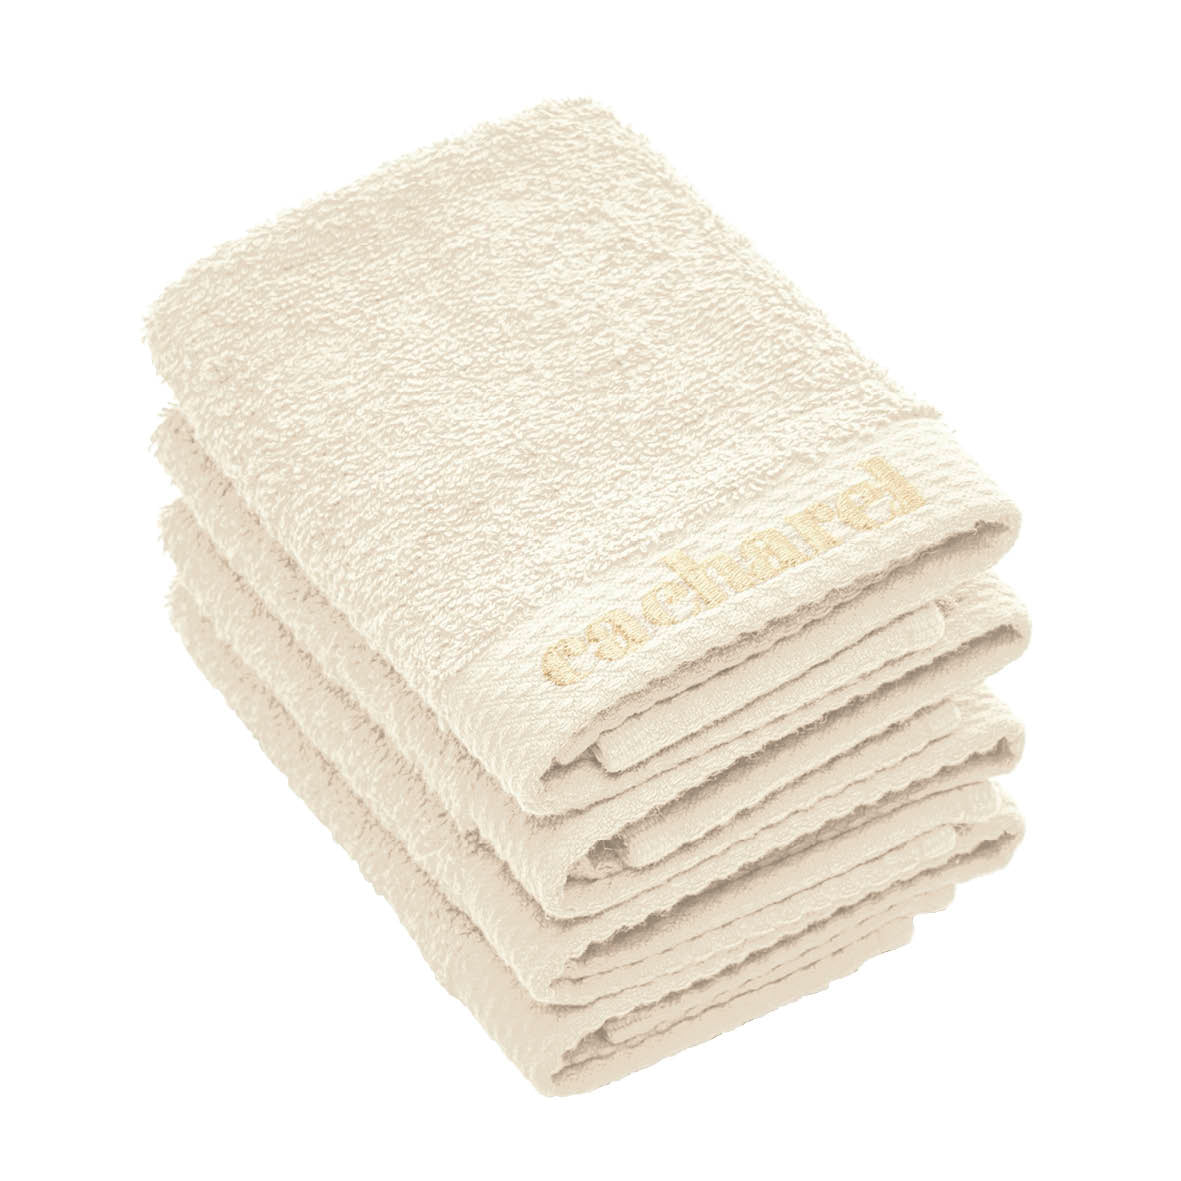 4 serviettes d'invitées - 30 x 30 cm - VipShopBoutic